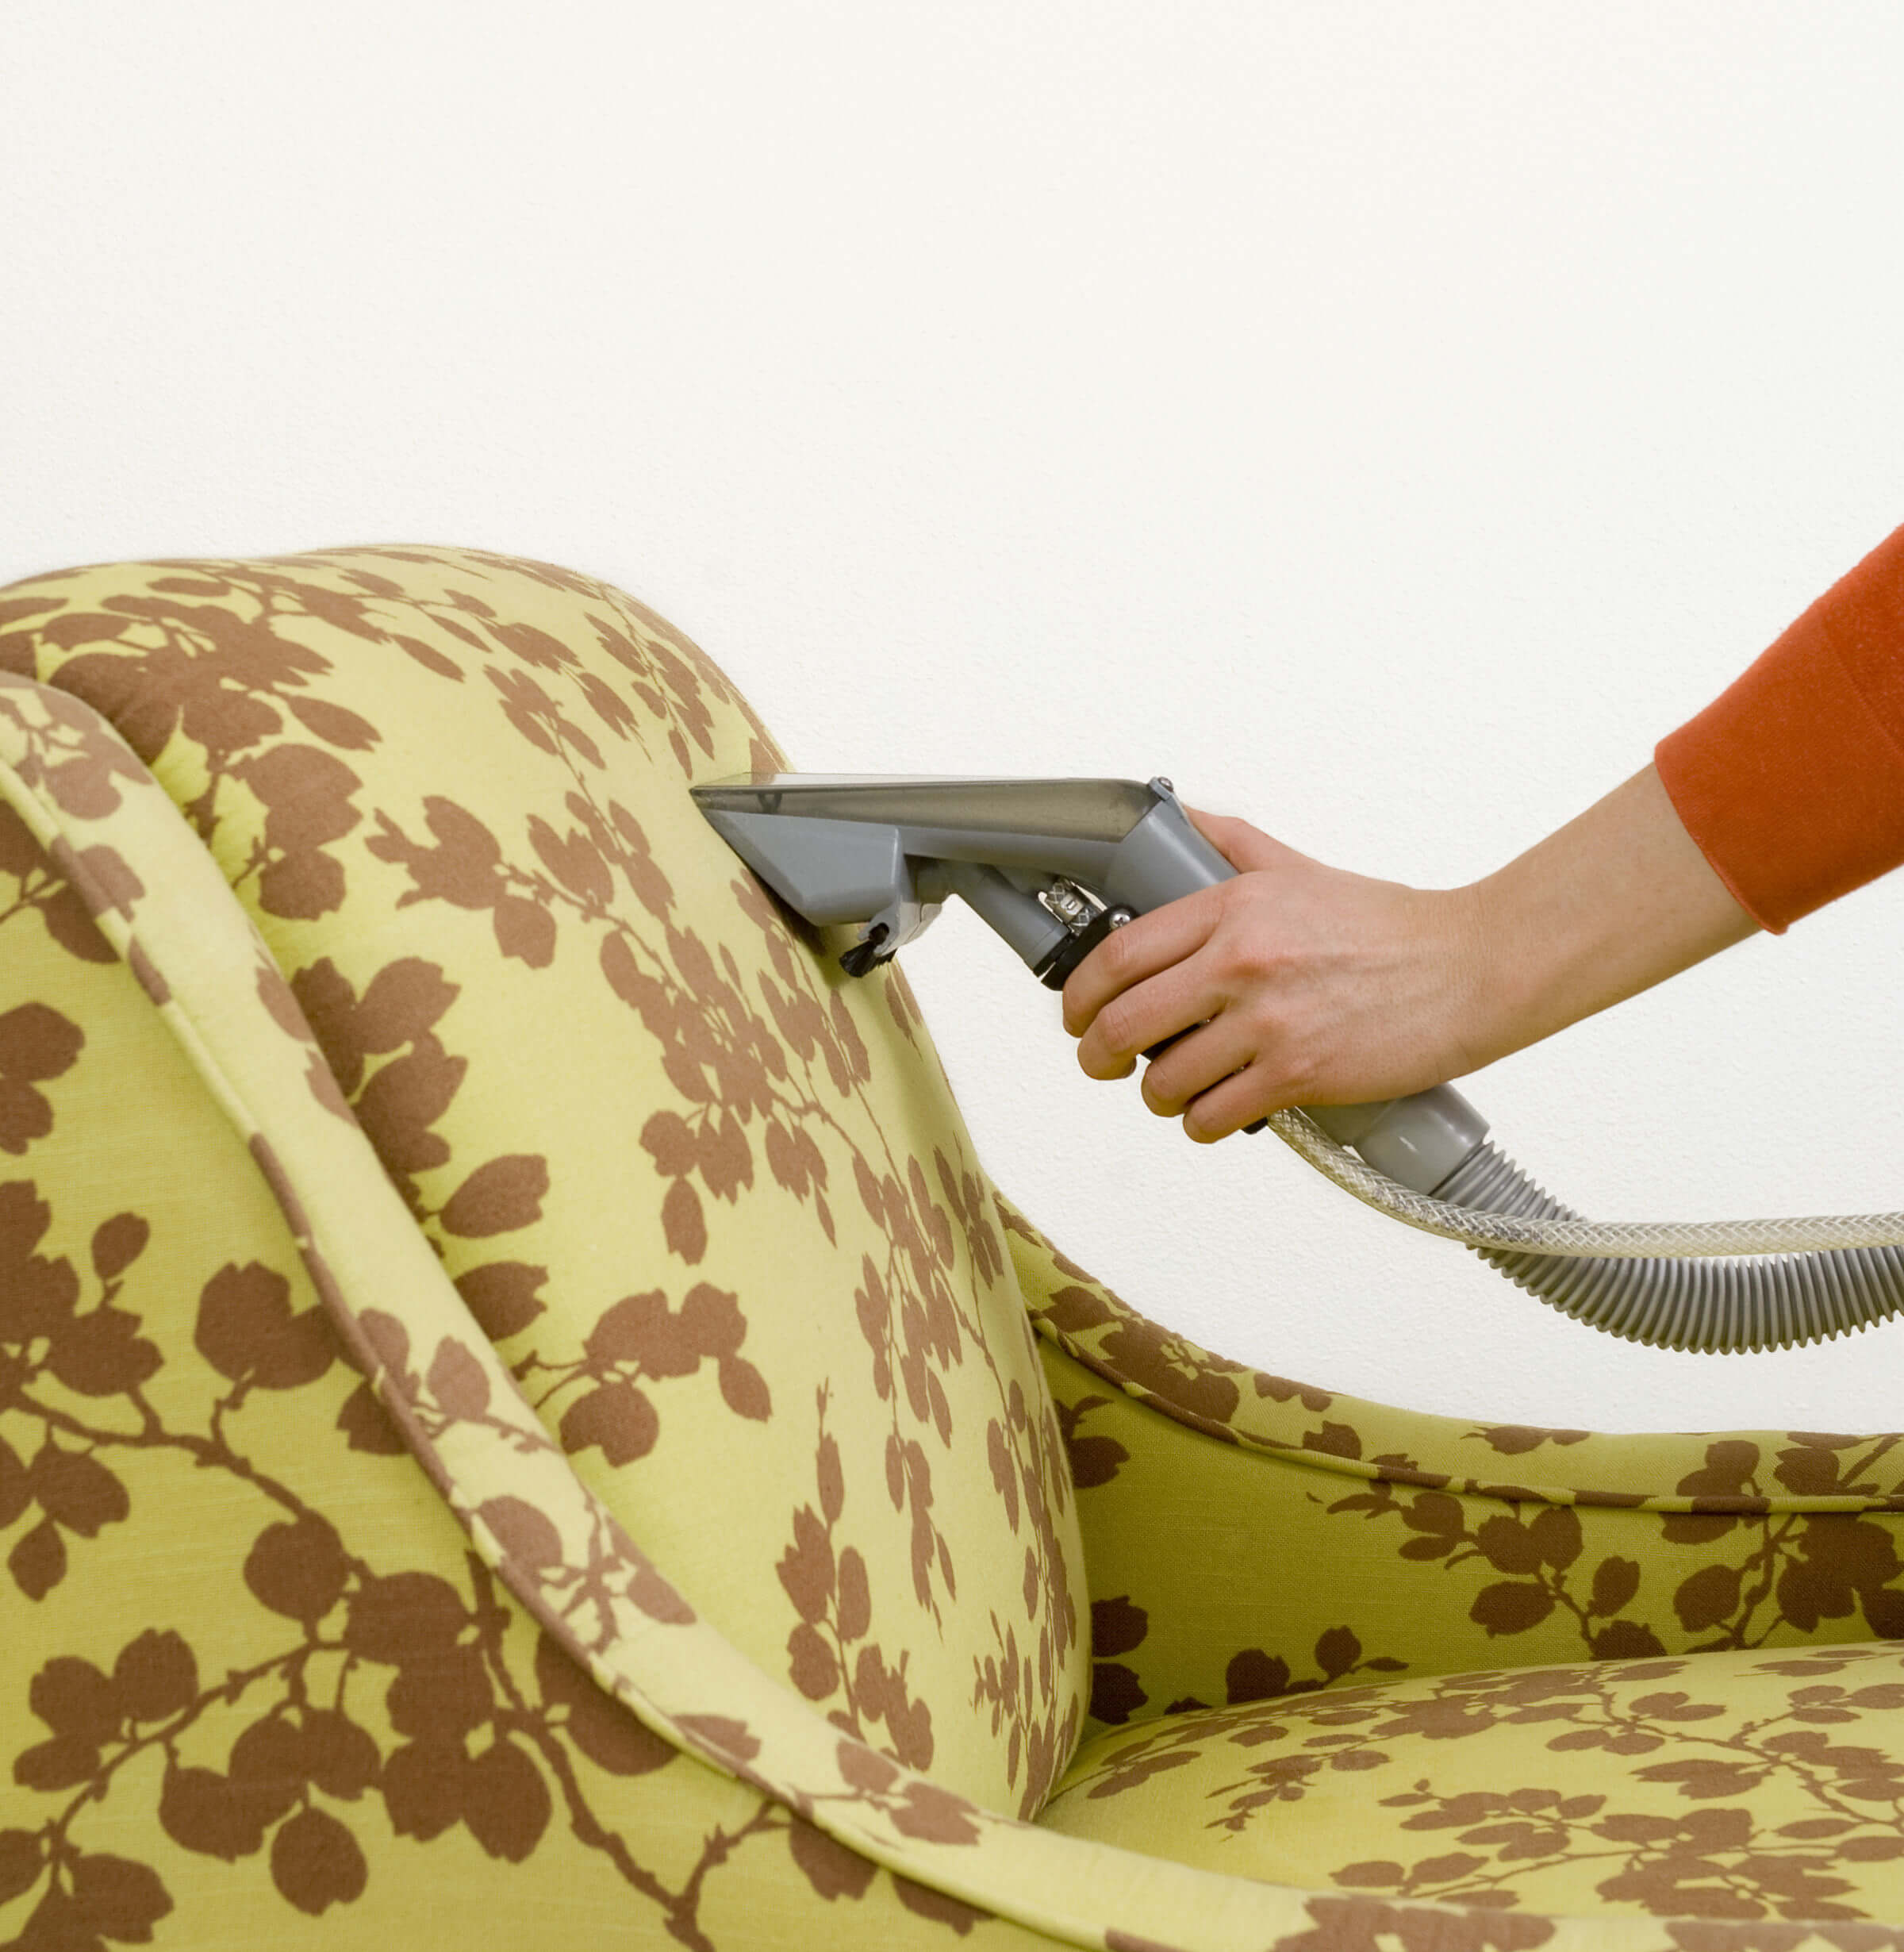 Почистить мягкую мебель в домашних условиях от пятен